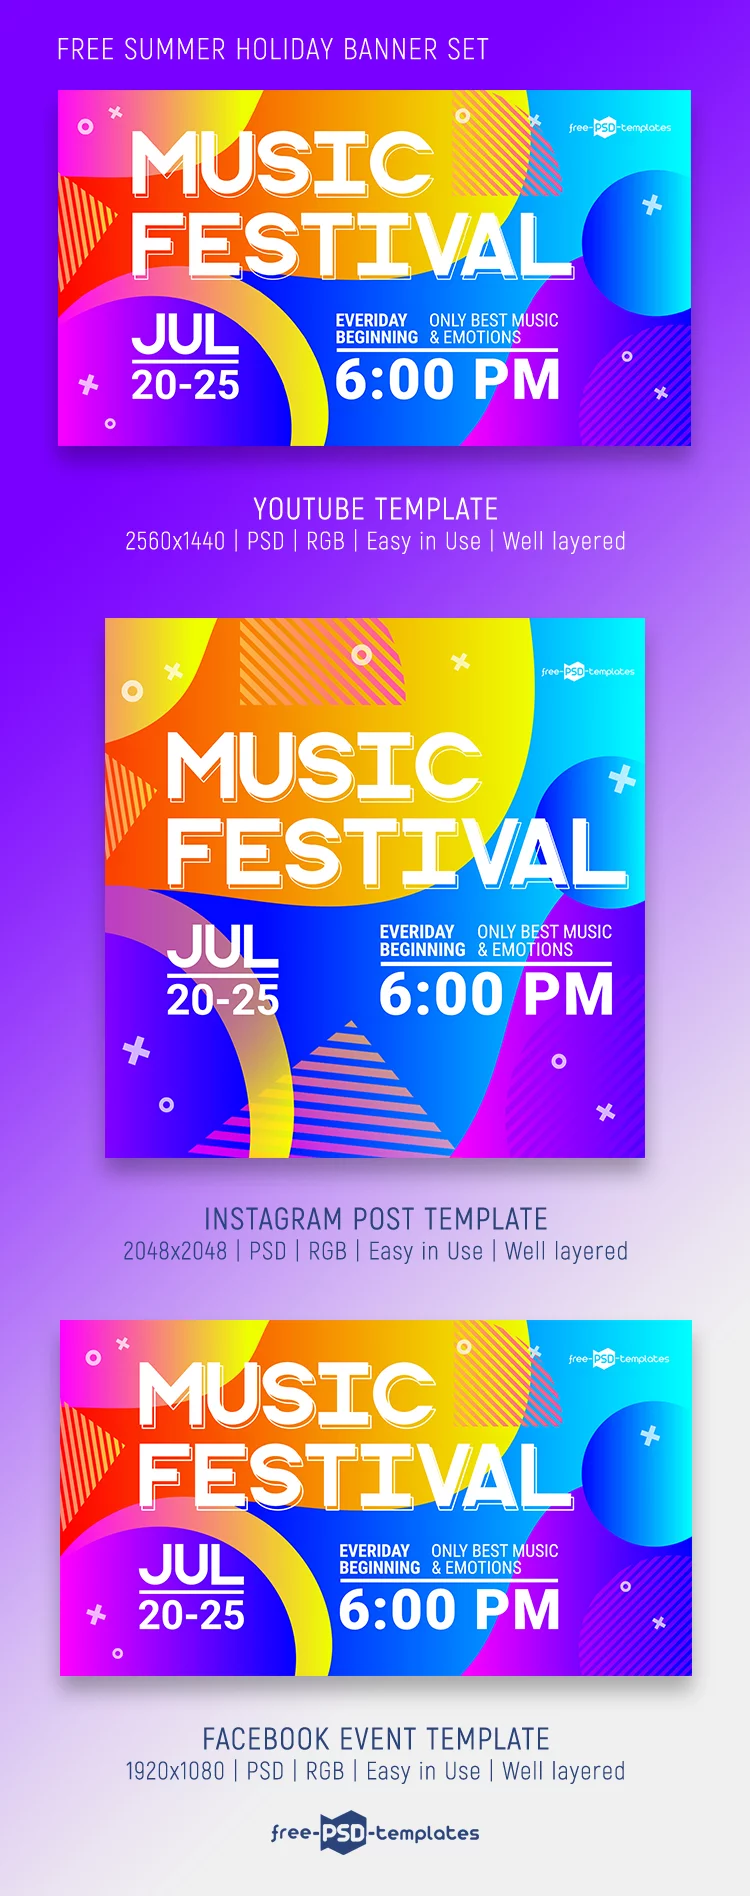 Free Music Festival Banner Set